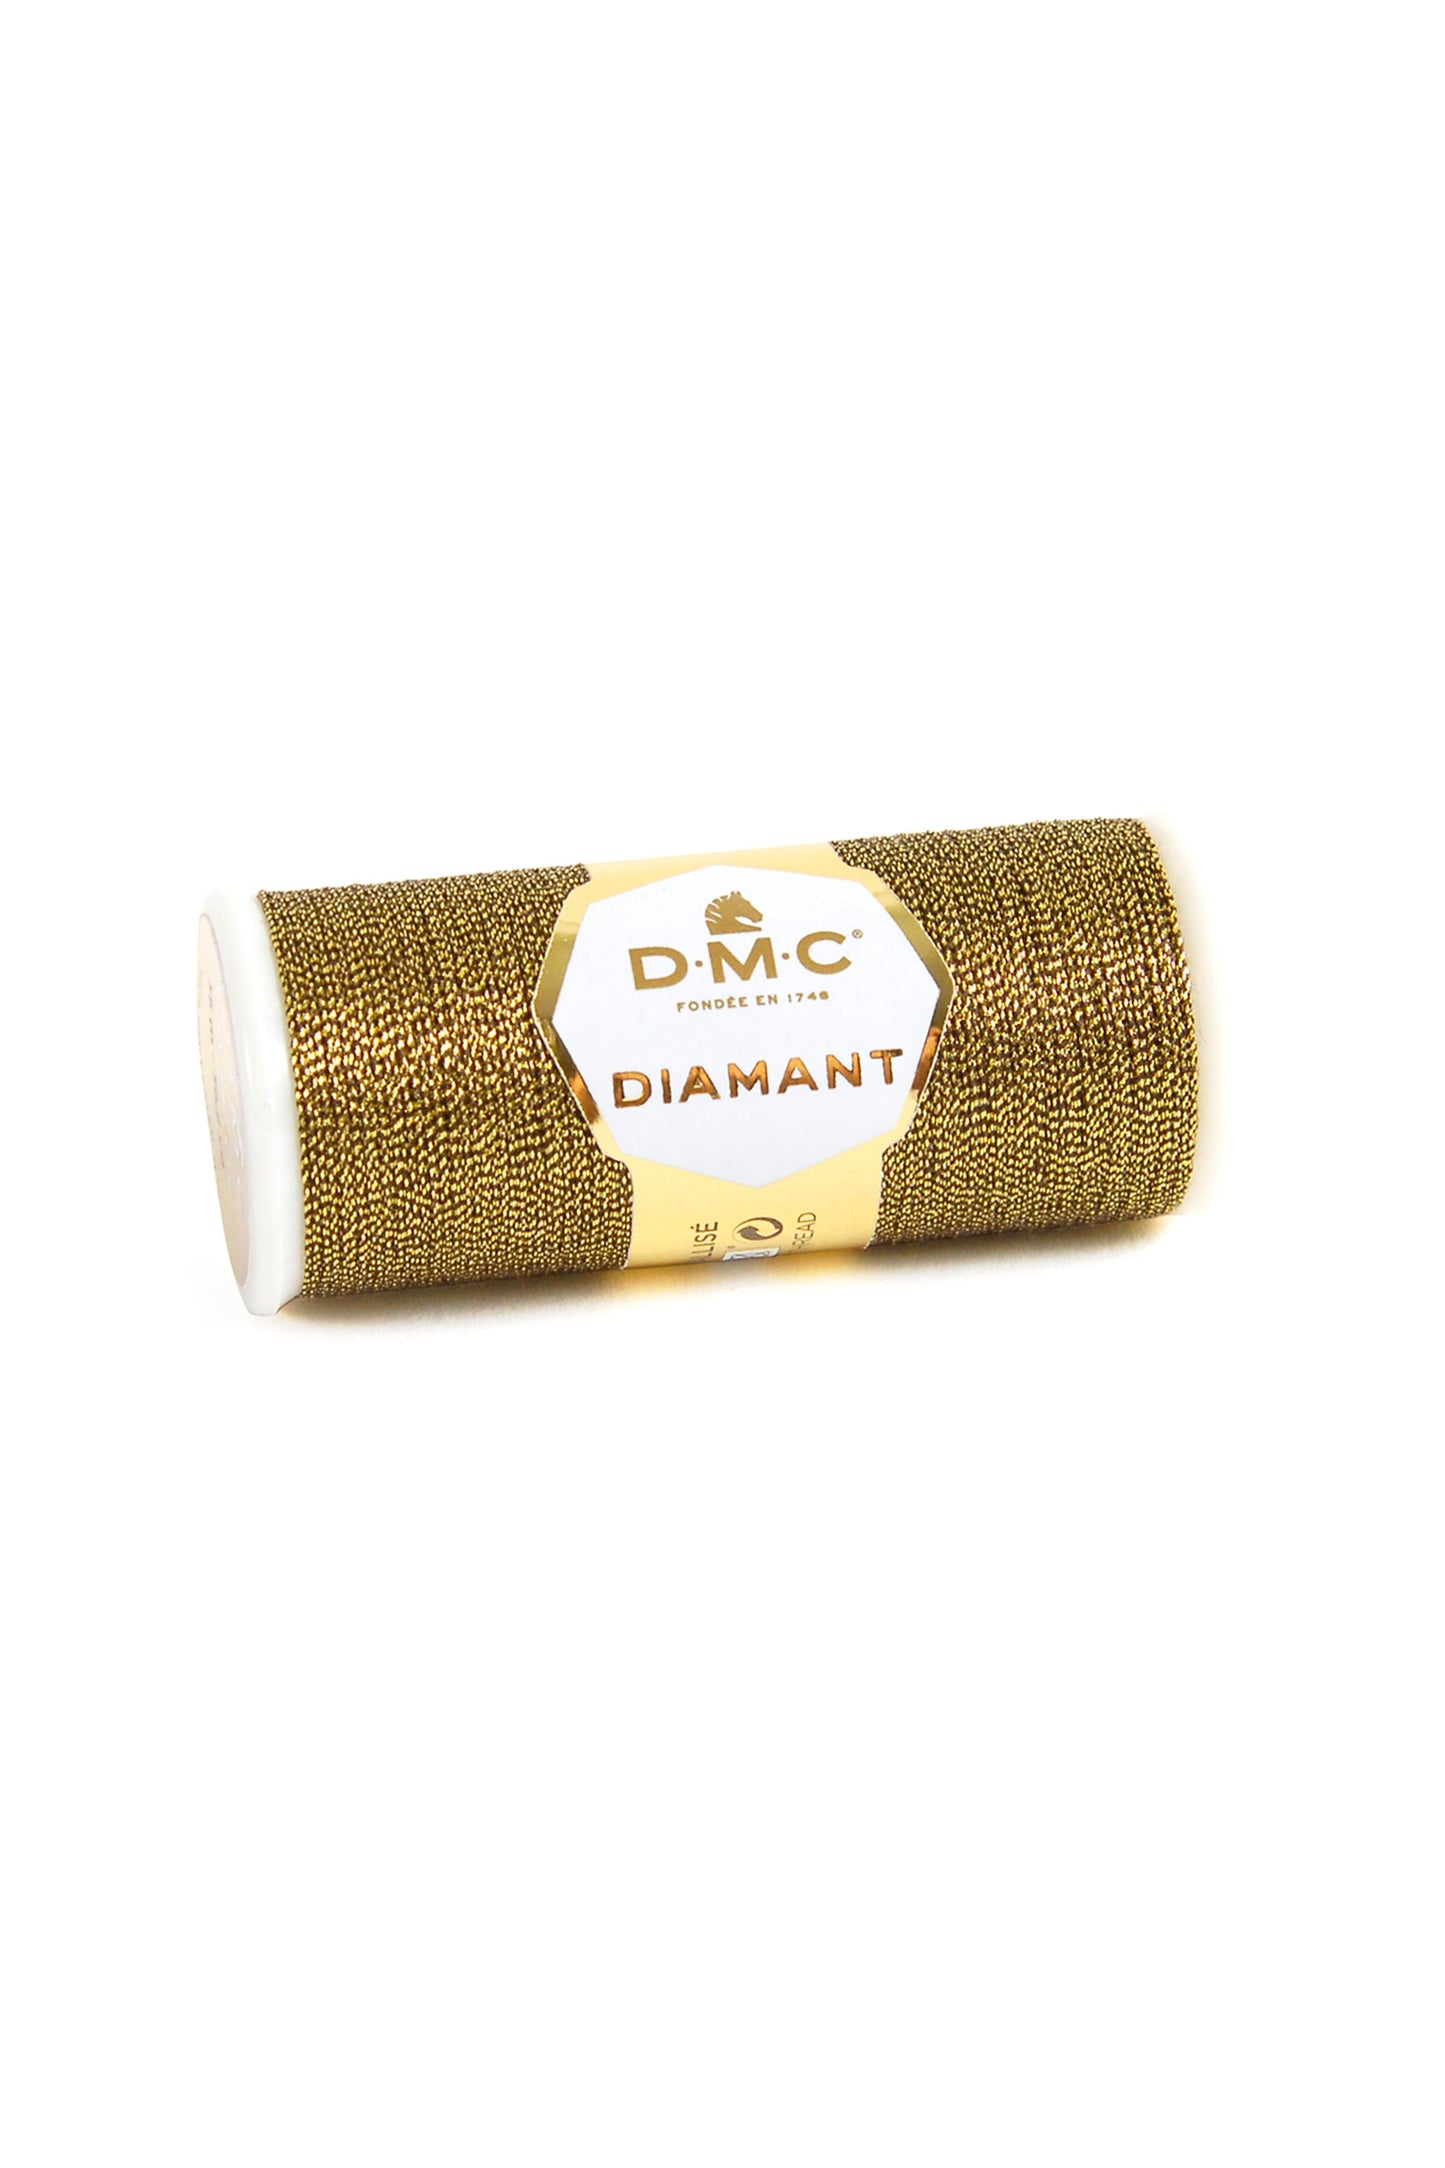 D140 Gold & Black – DMC Diamant metallic thread